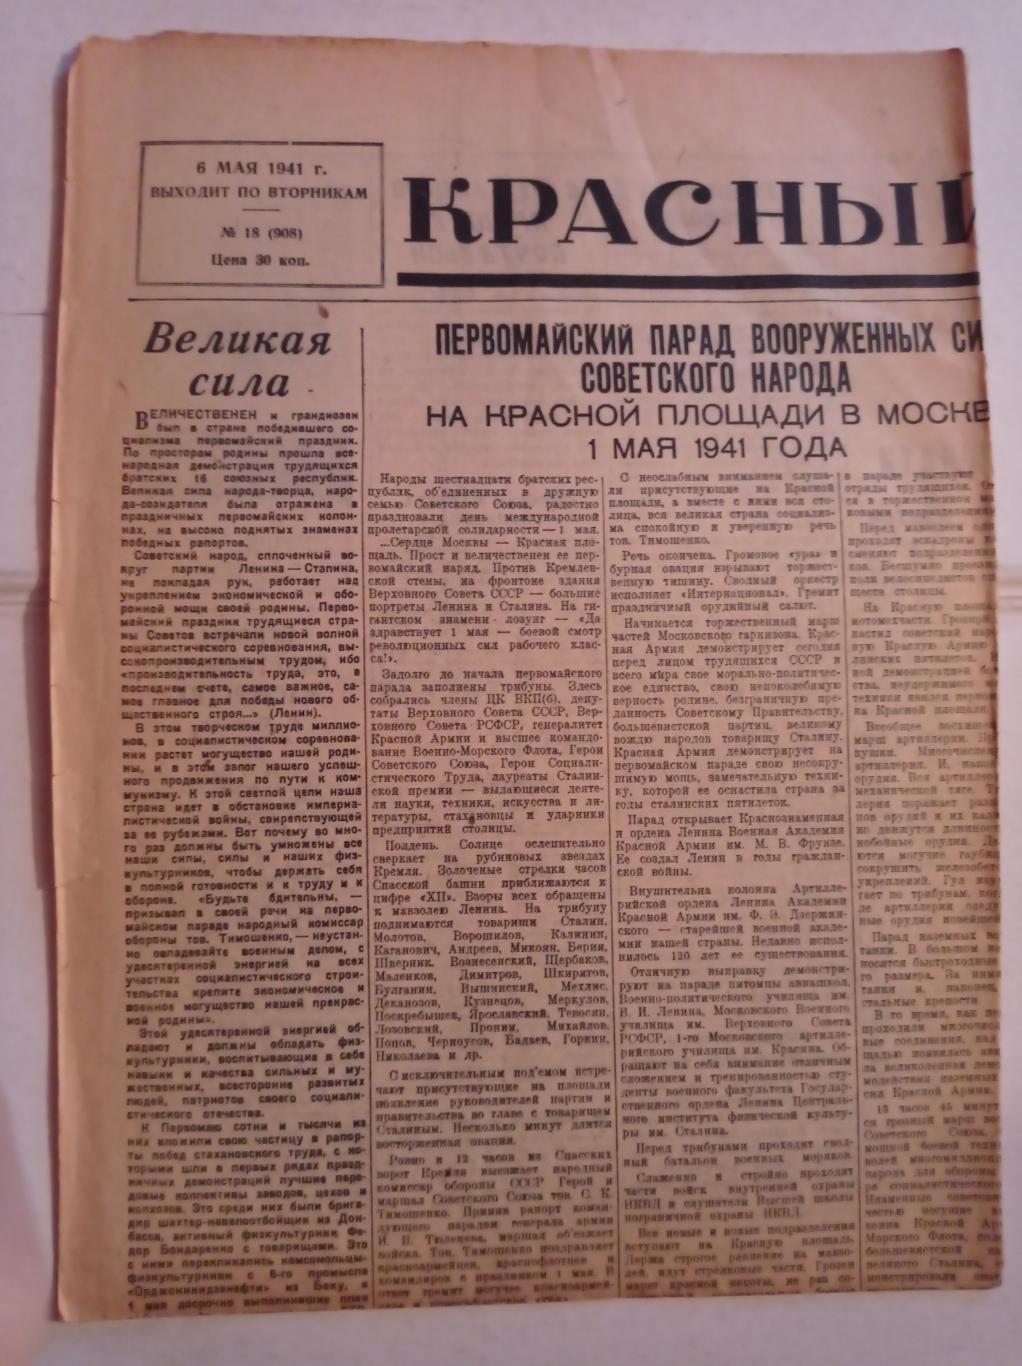 Газета Красный спорт 6.05.1941 №18 (908)